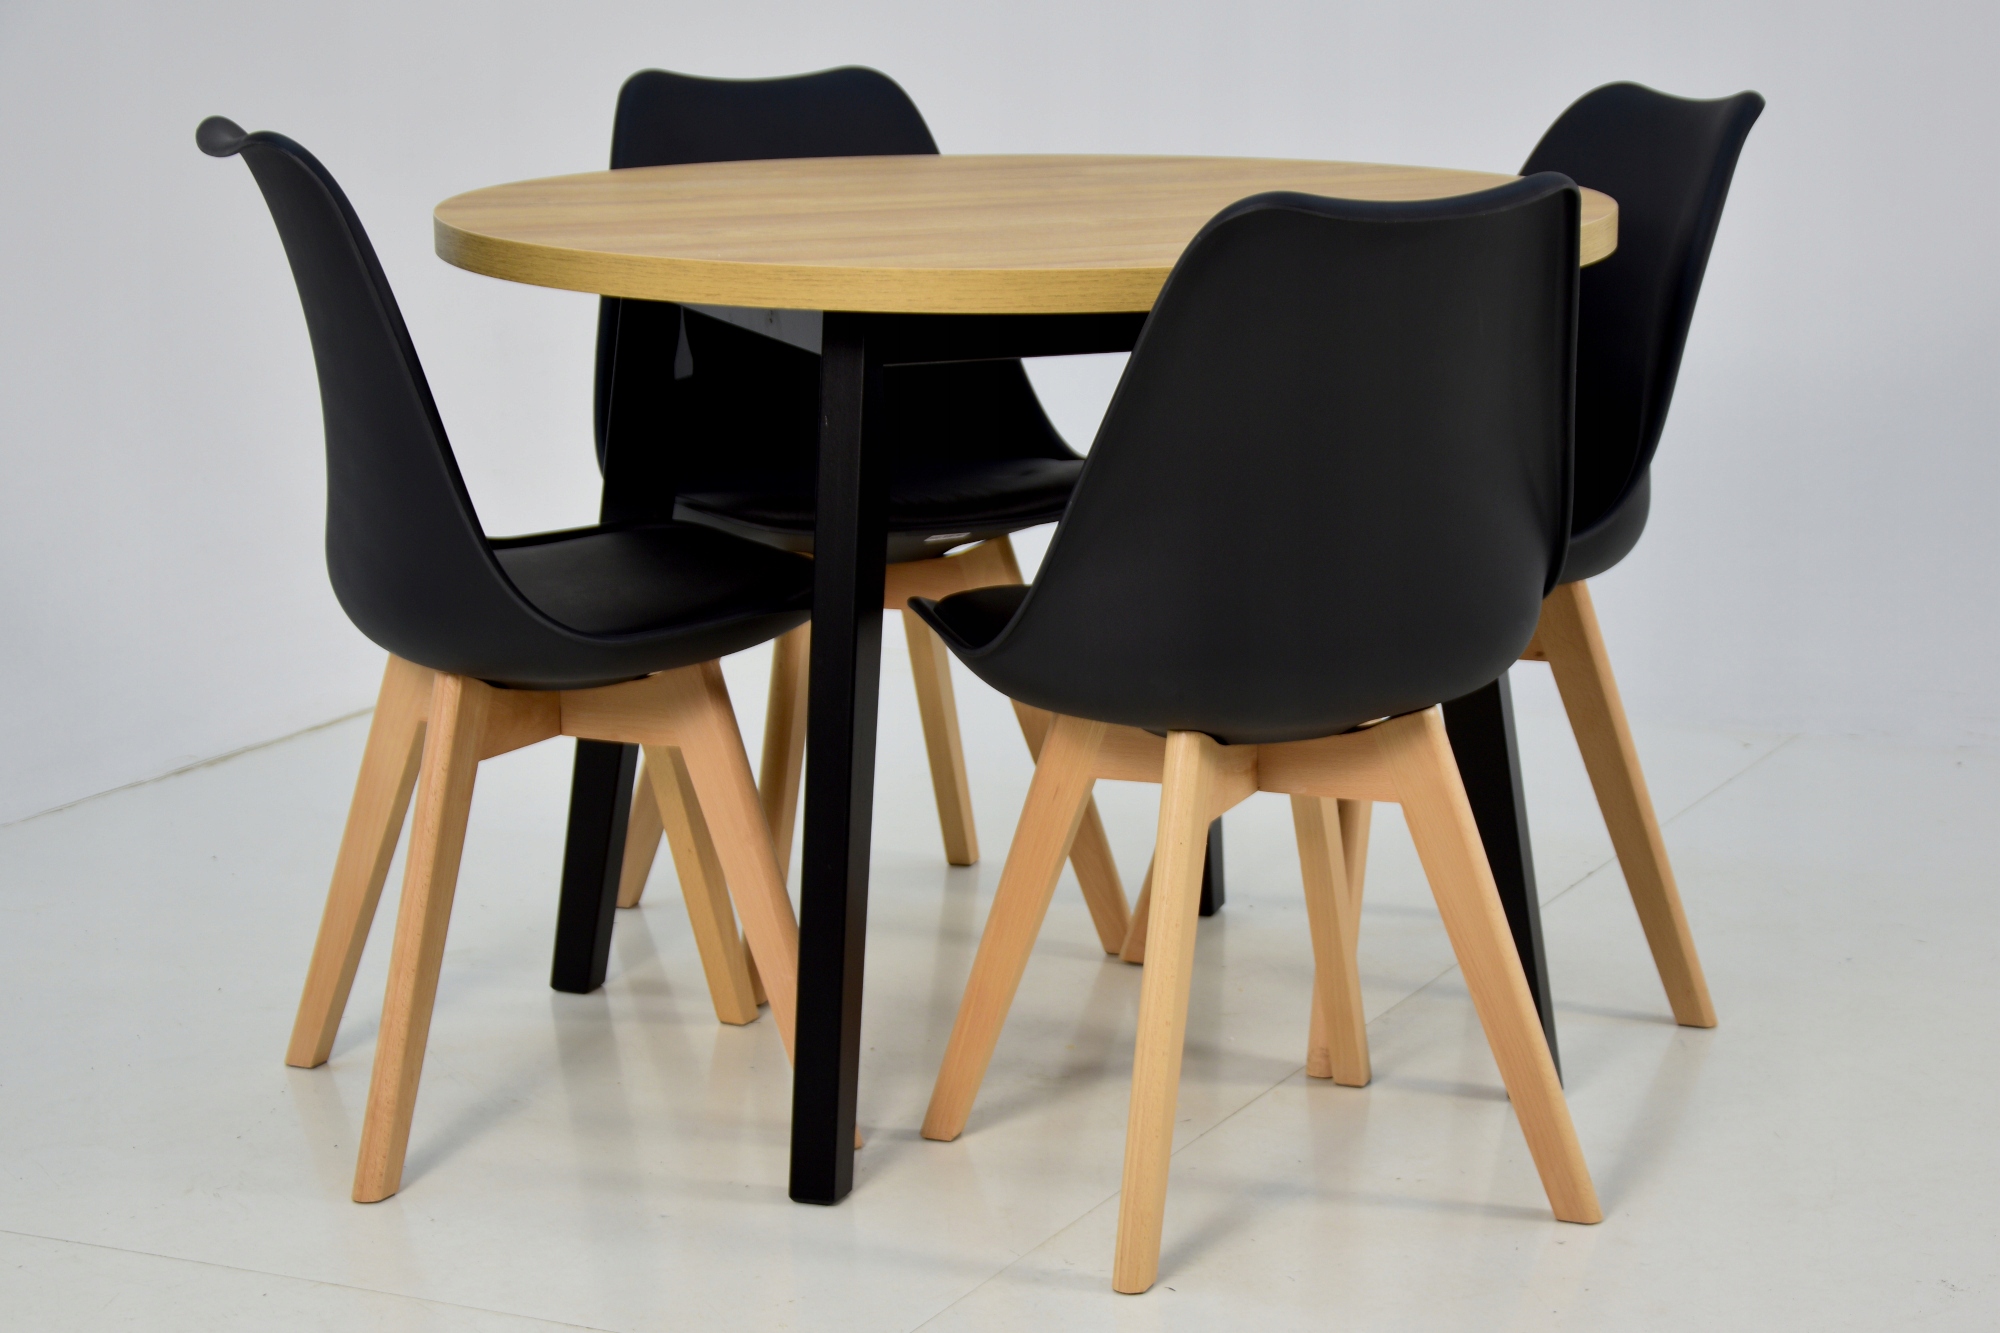 4 скандинавських стільця + круглий стіл 100 см. Ширина столу 100 см